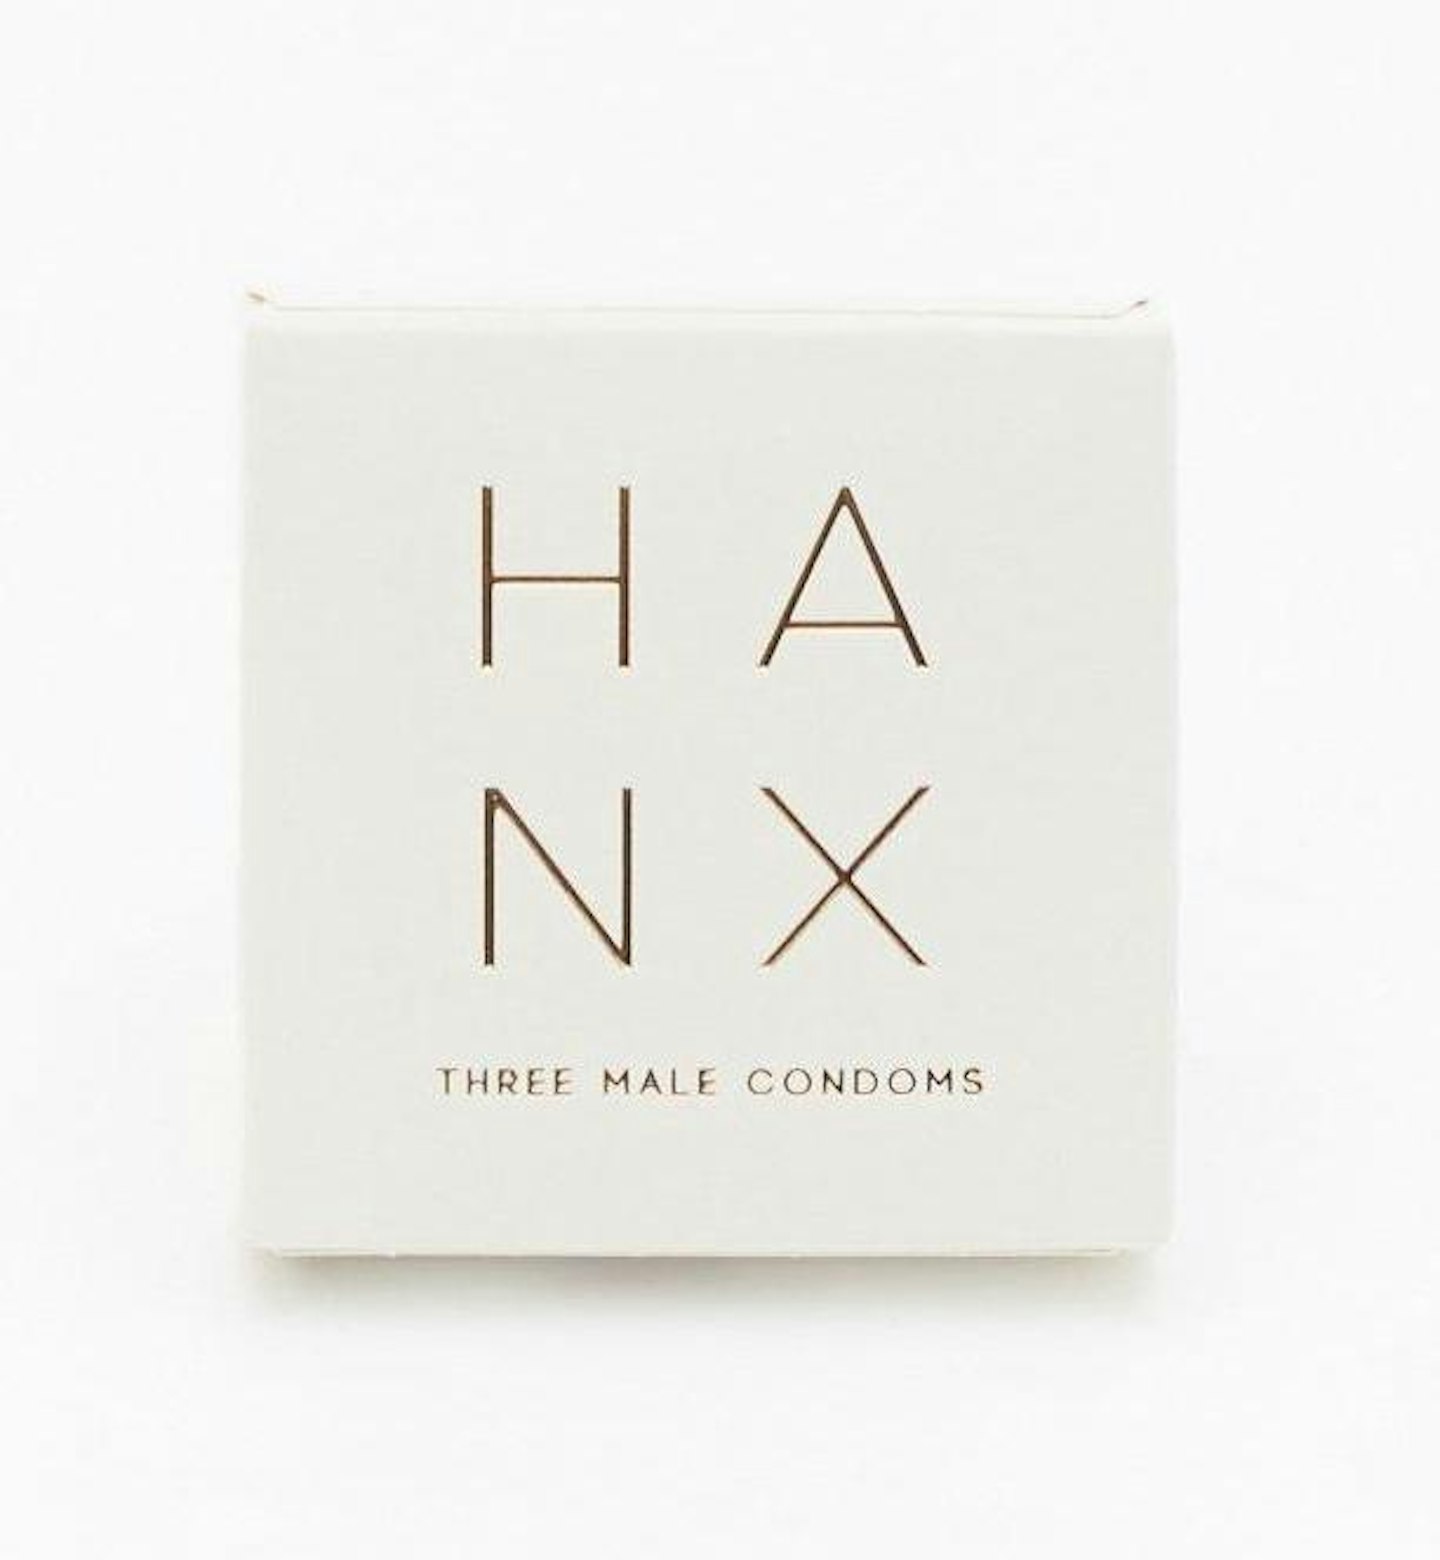 HANX Condoms, £16.99 for 10